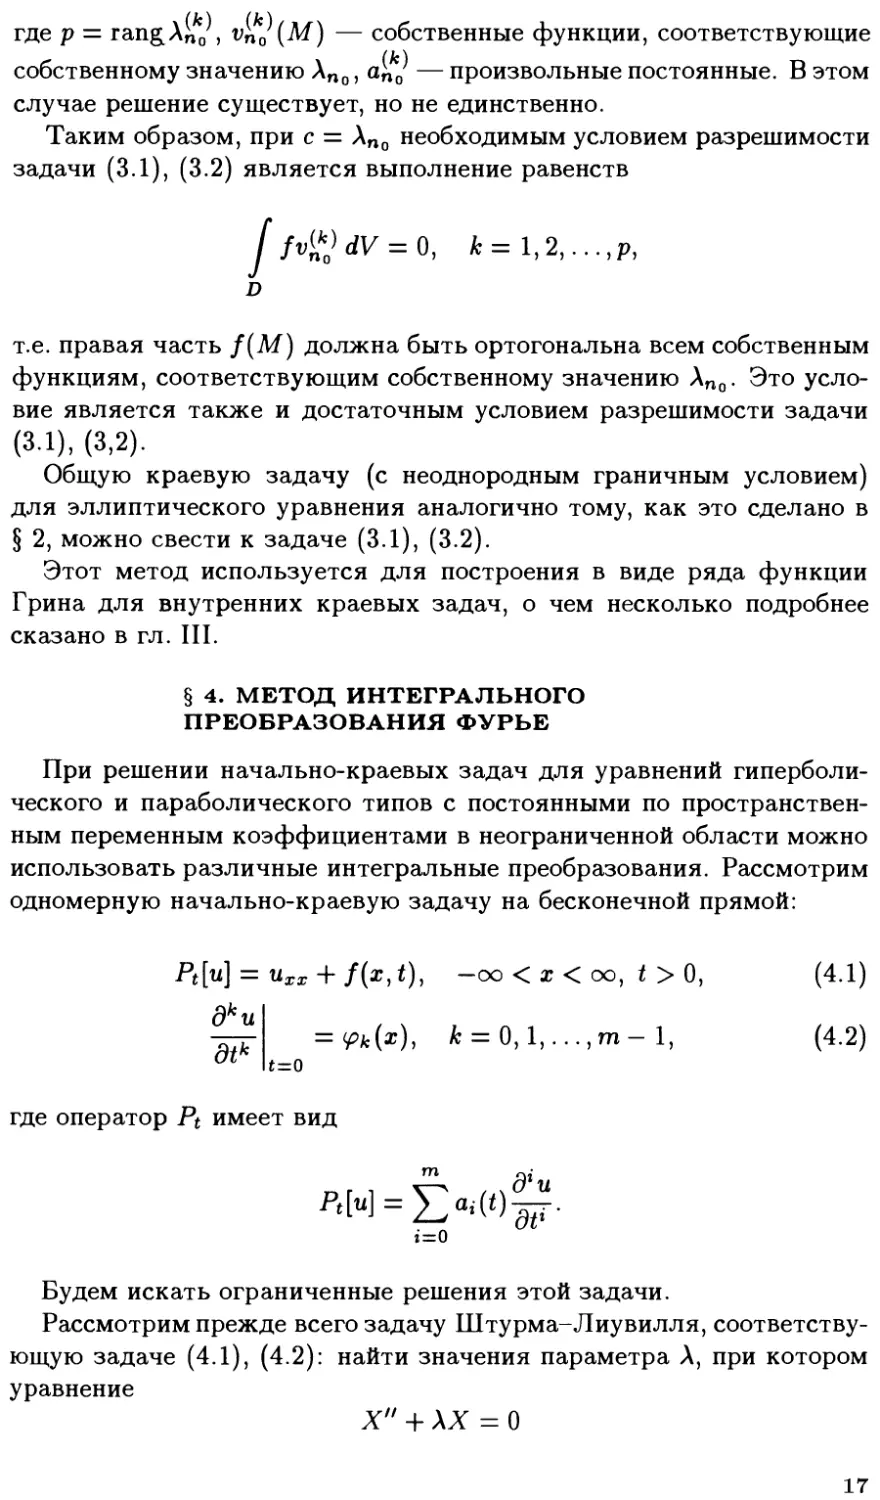 §4. Метод интегрального преобразования Фурье